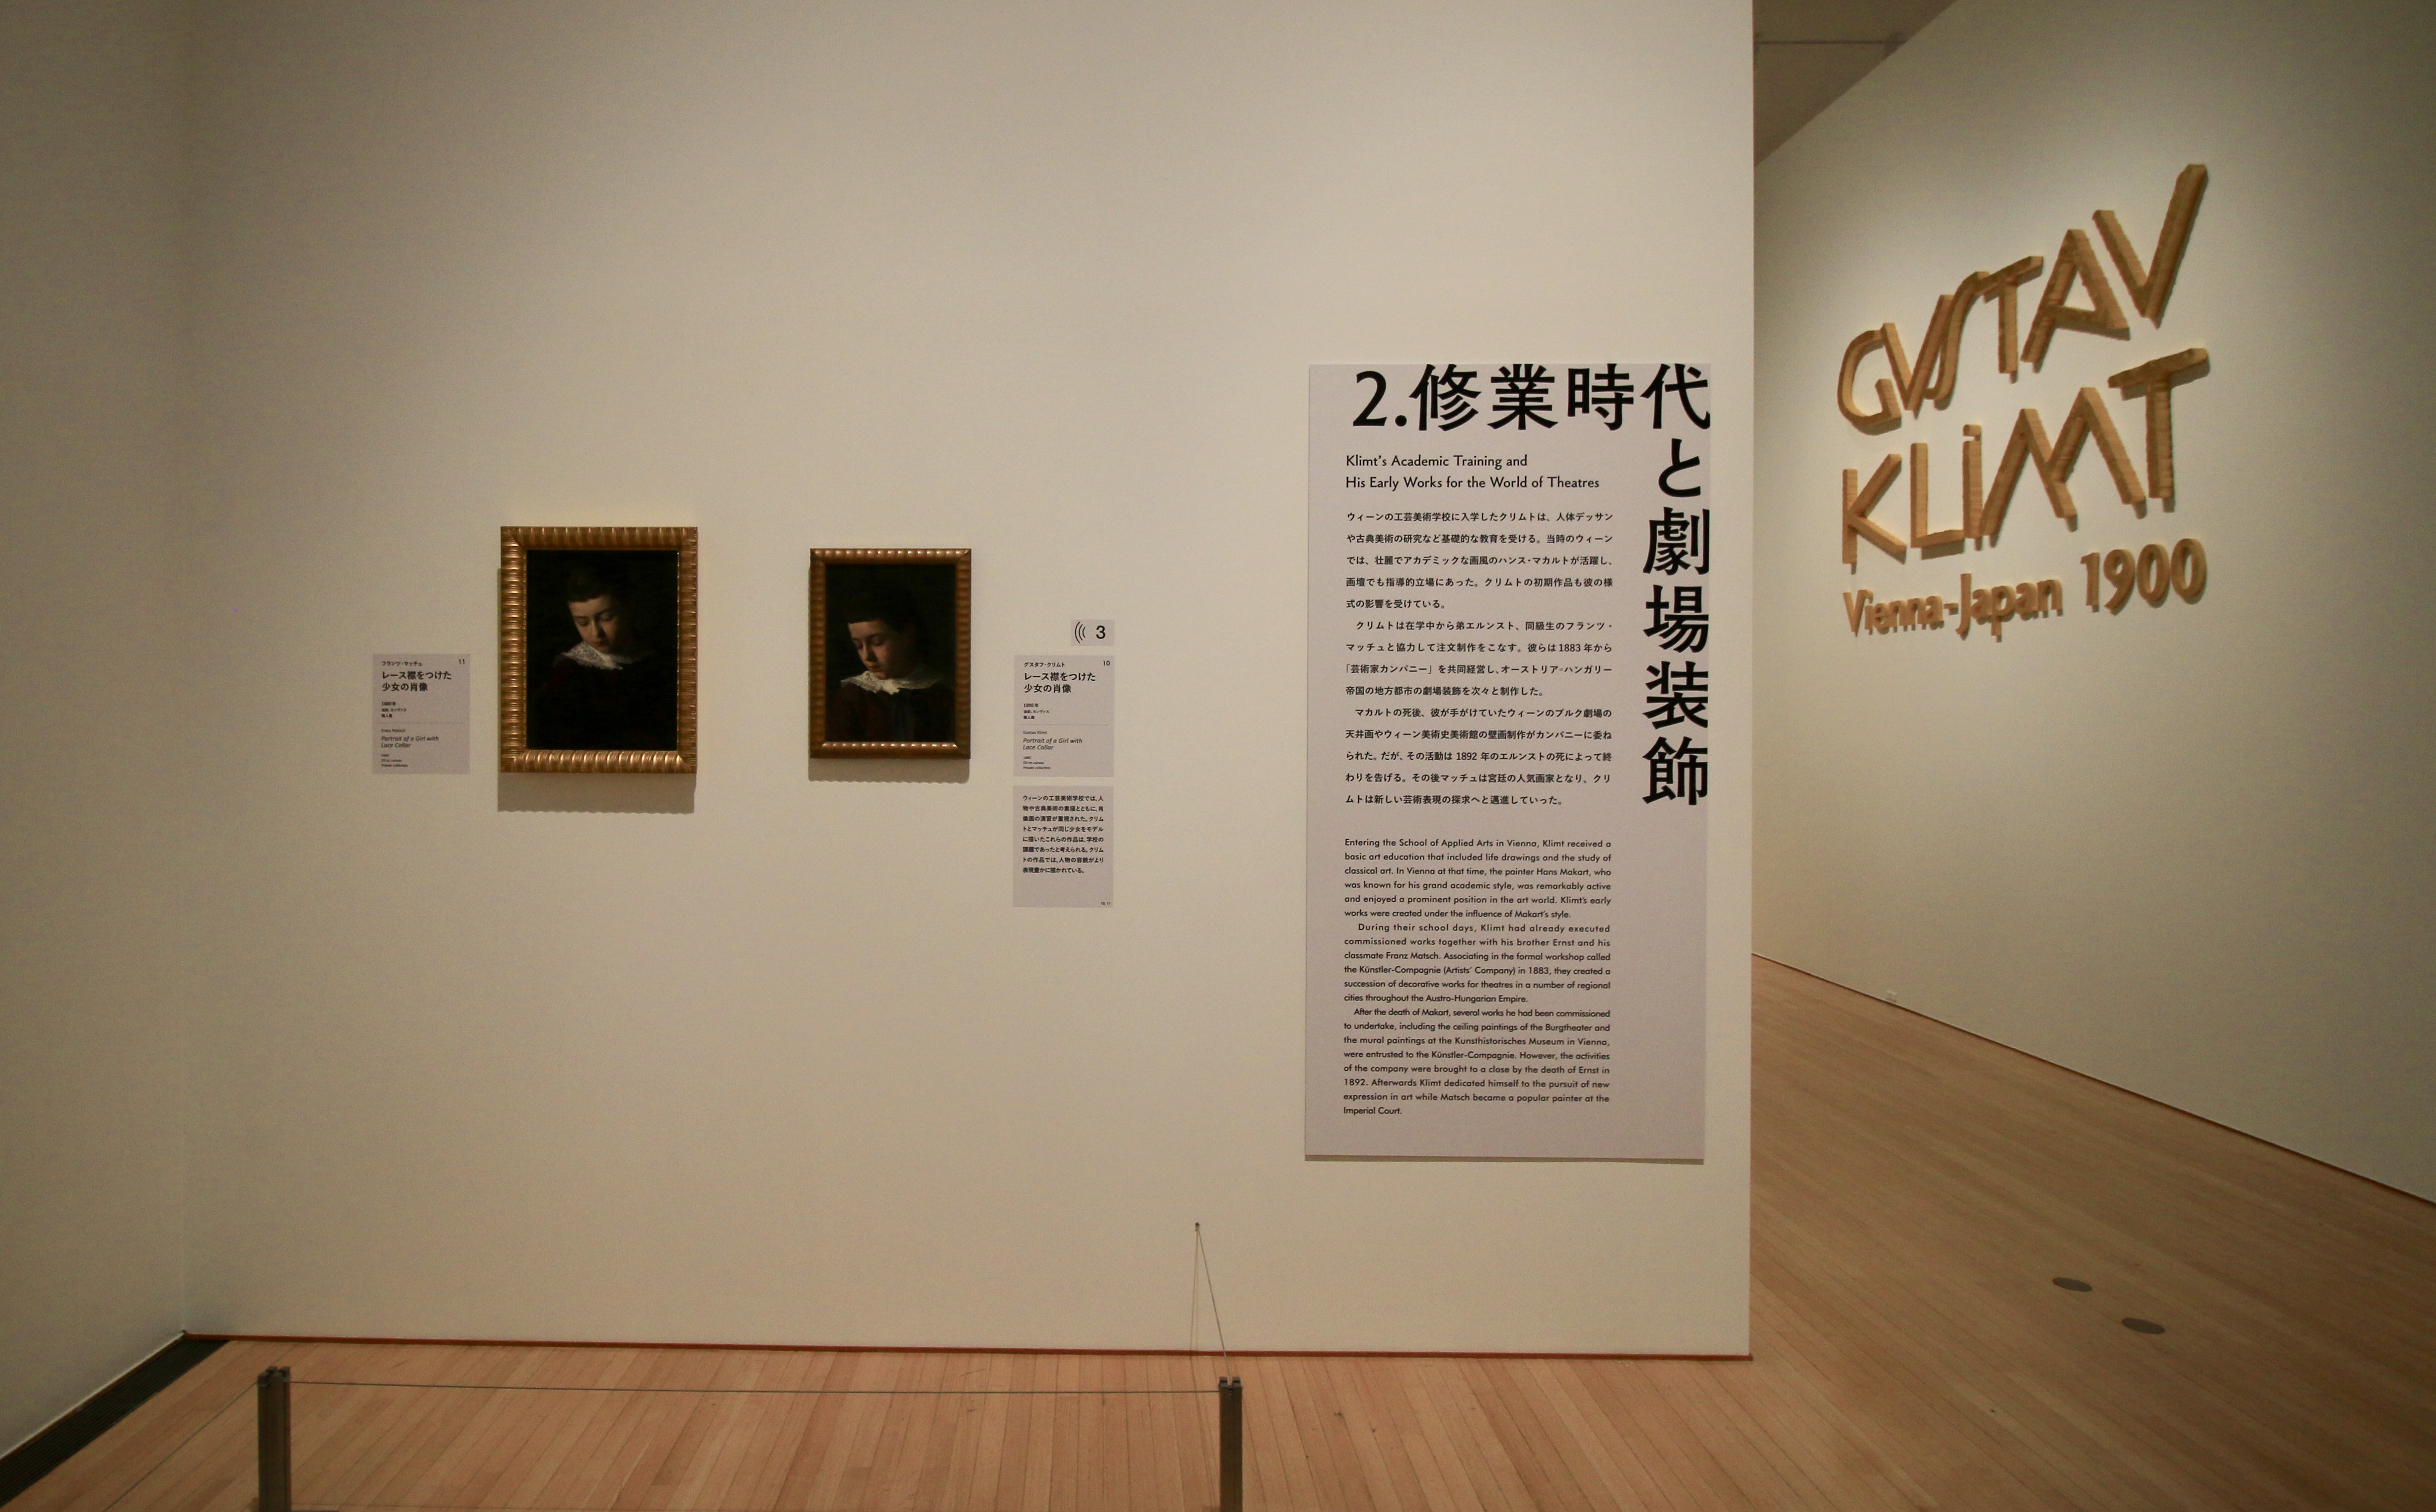 過去最大級！「クリムト展 ウィーンと日本1900」がついに豊田市美術館へ - fullsizeoutput b5